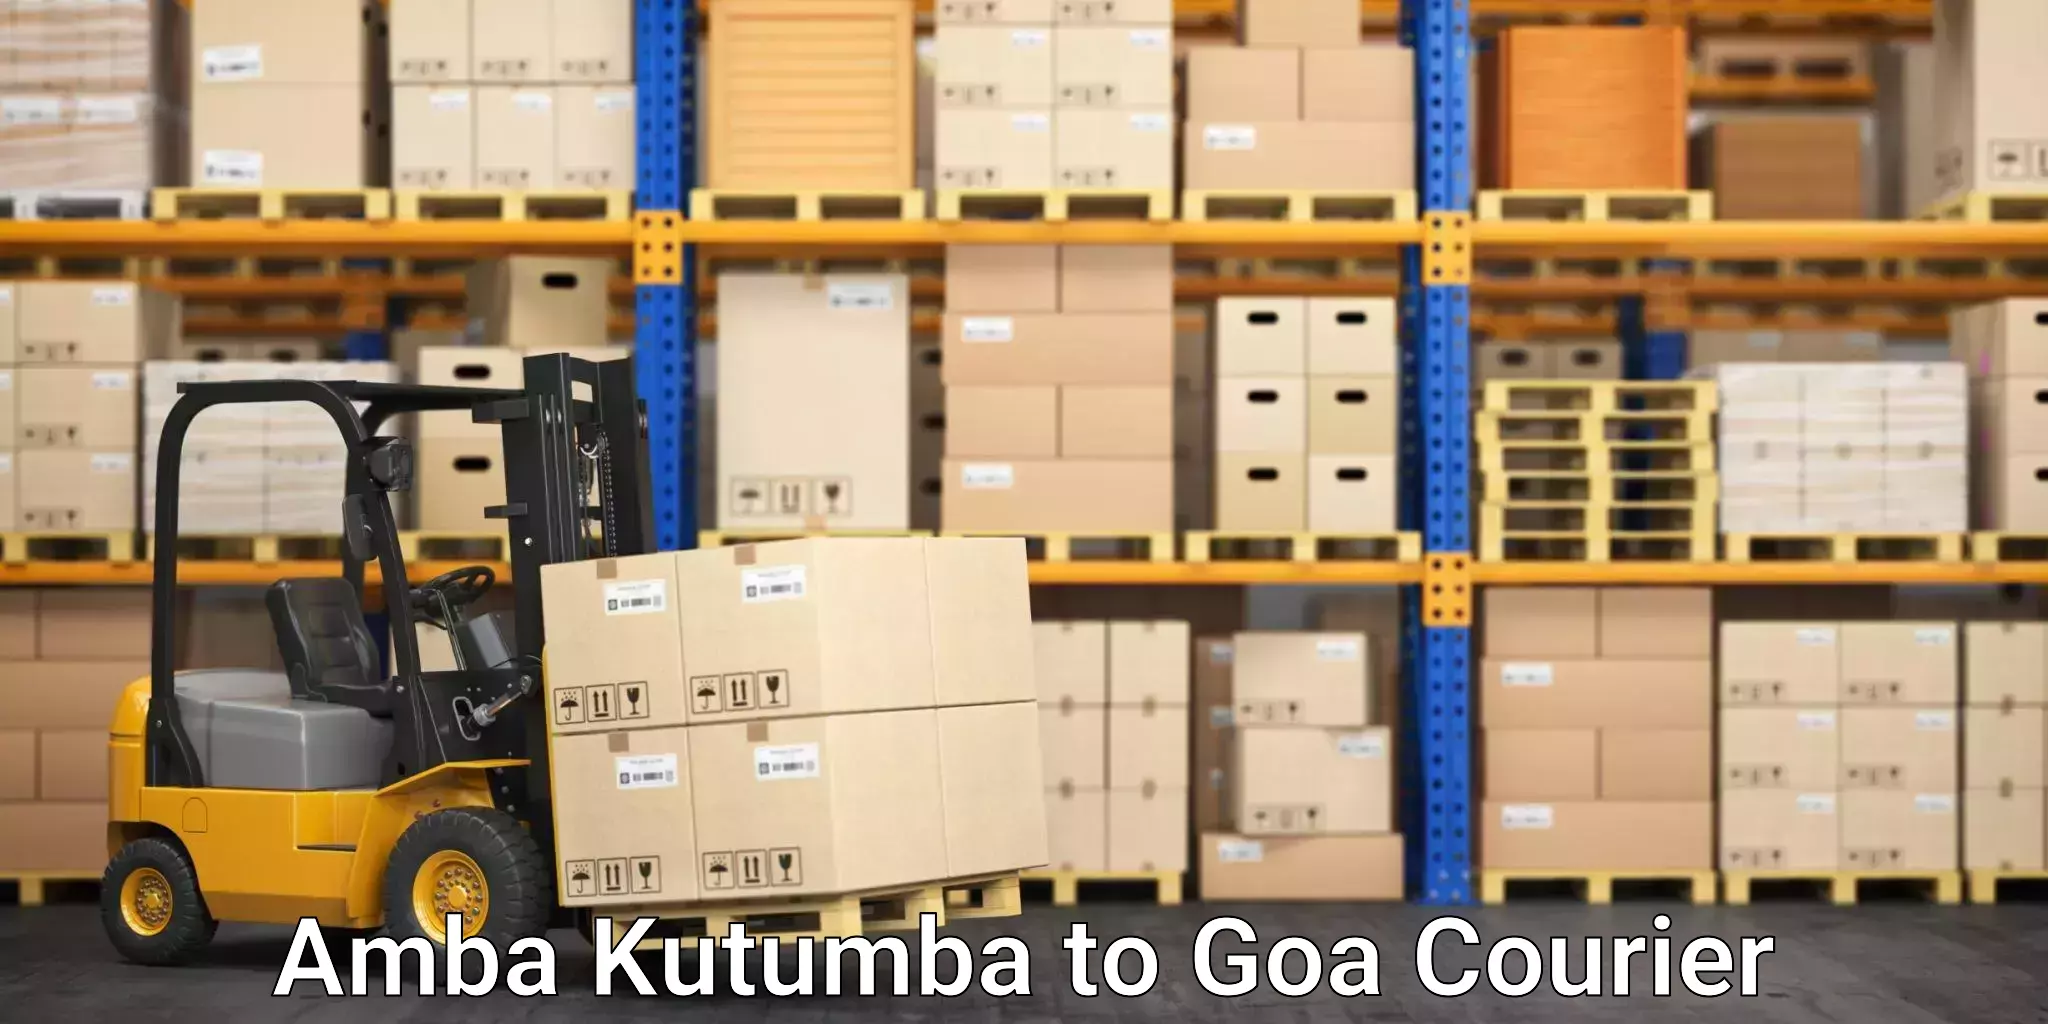 Residential relocation services Amba Kutumba to Goa